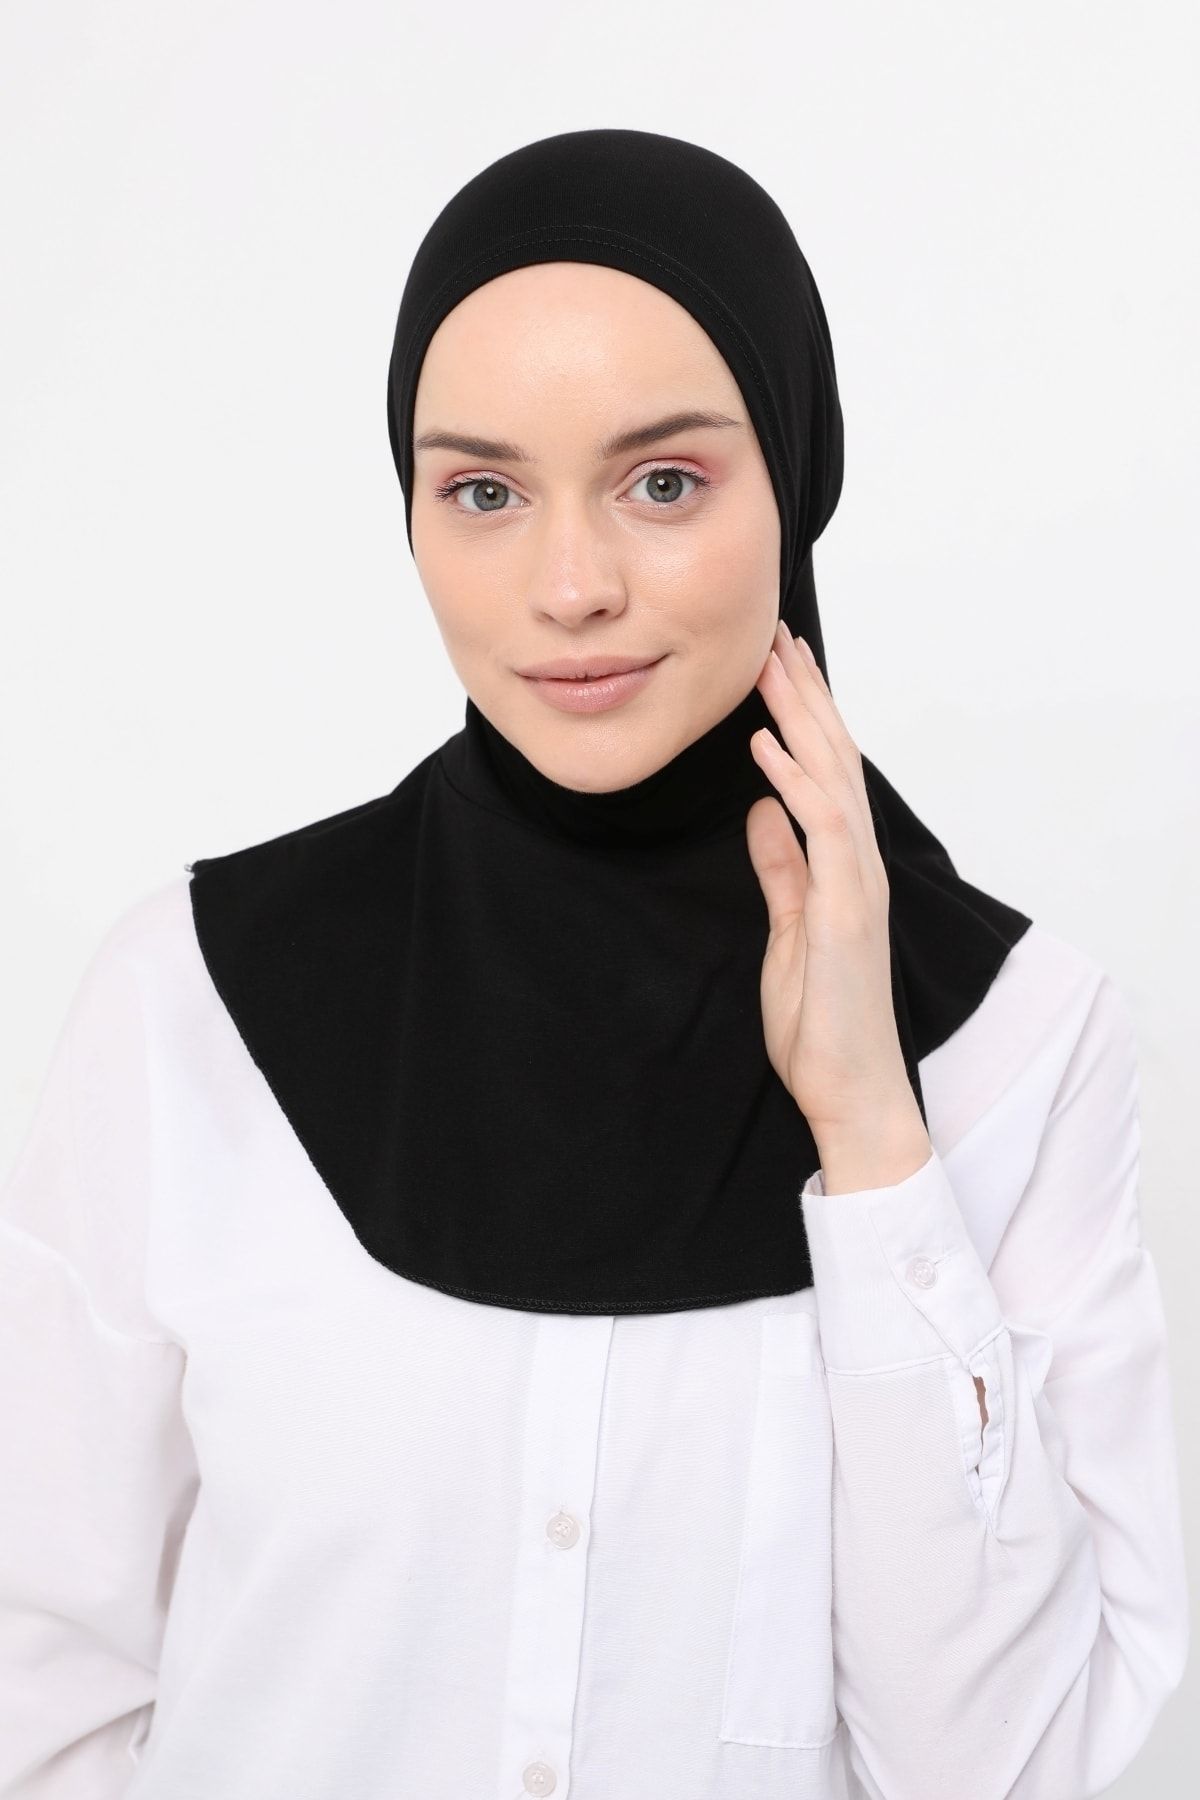 Altobeh Kadın Tesettür Pratik Boyunluklu Hijab - Sporcu Bone - Siyah